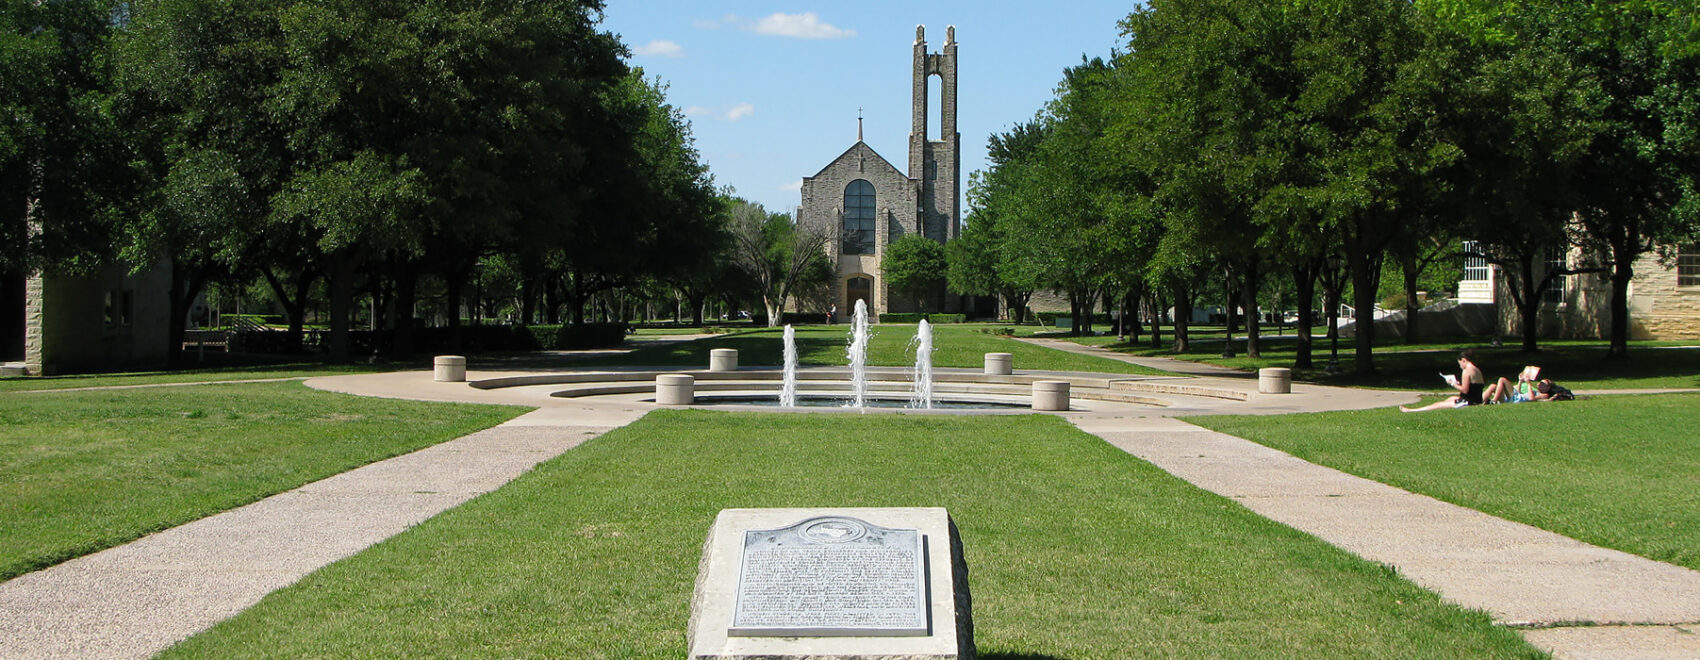 Southwestern University campus